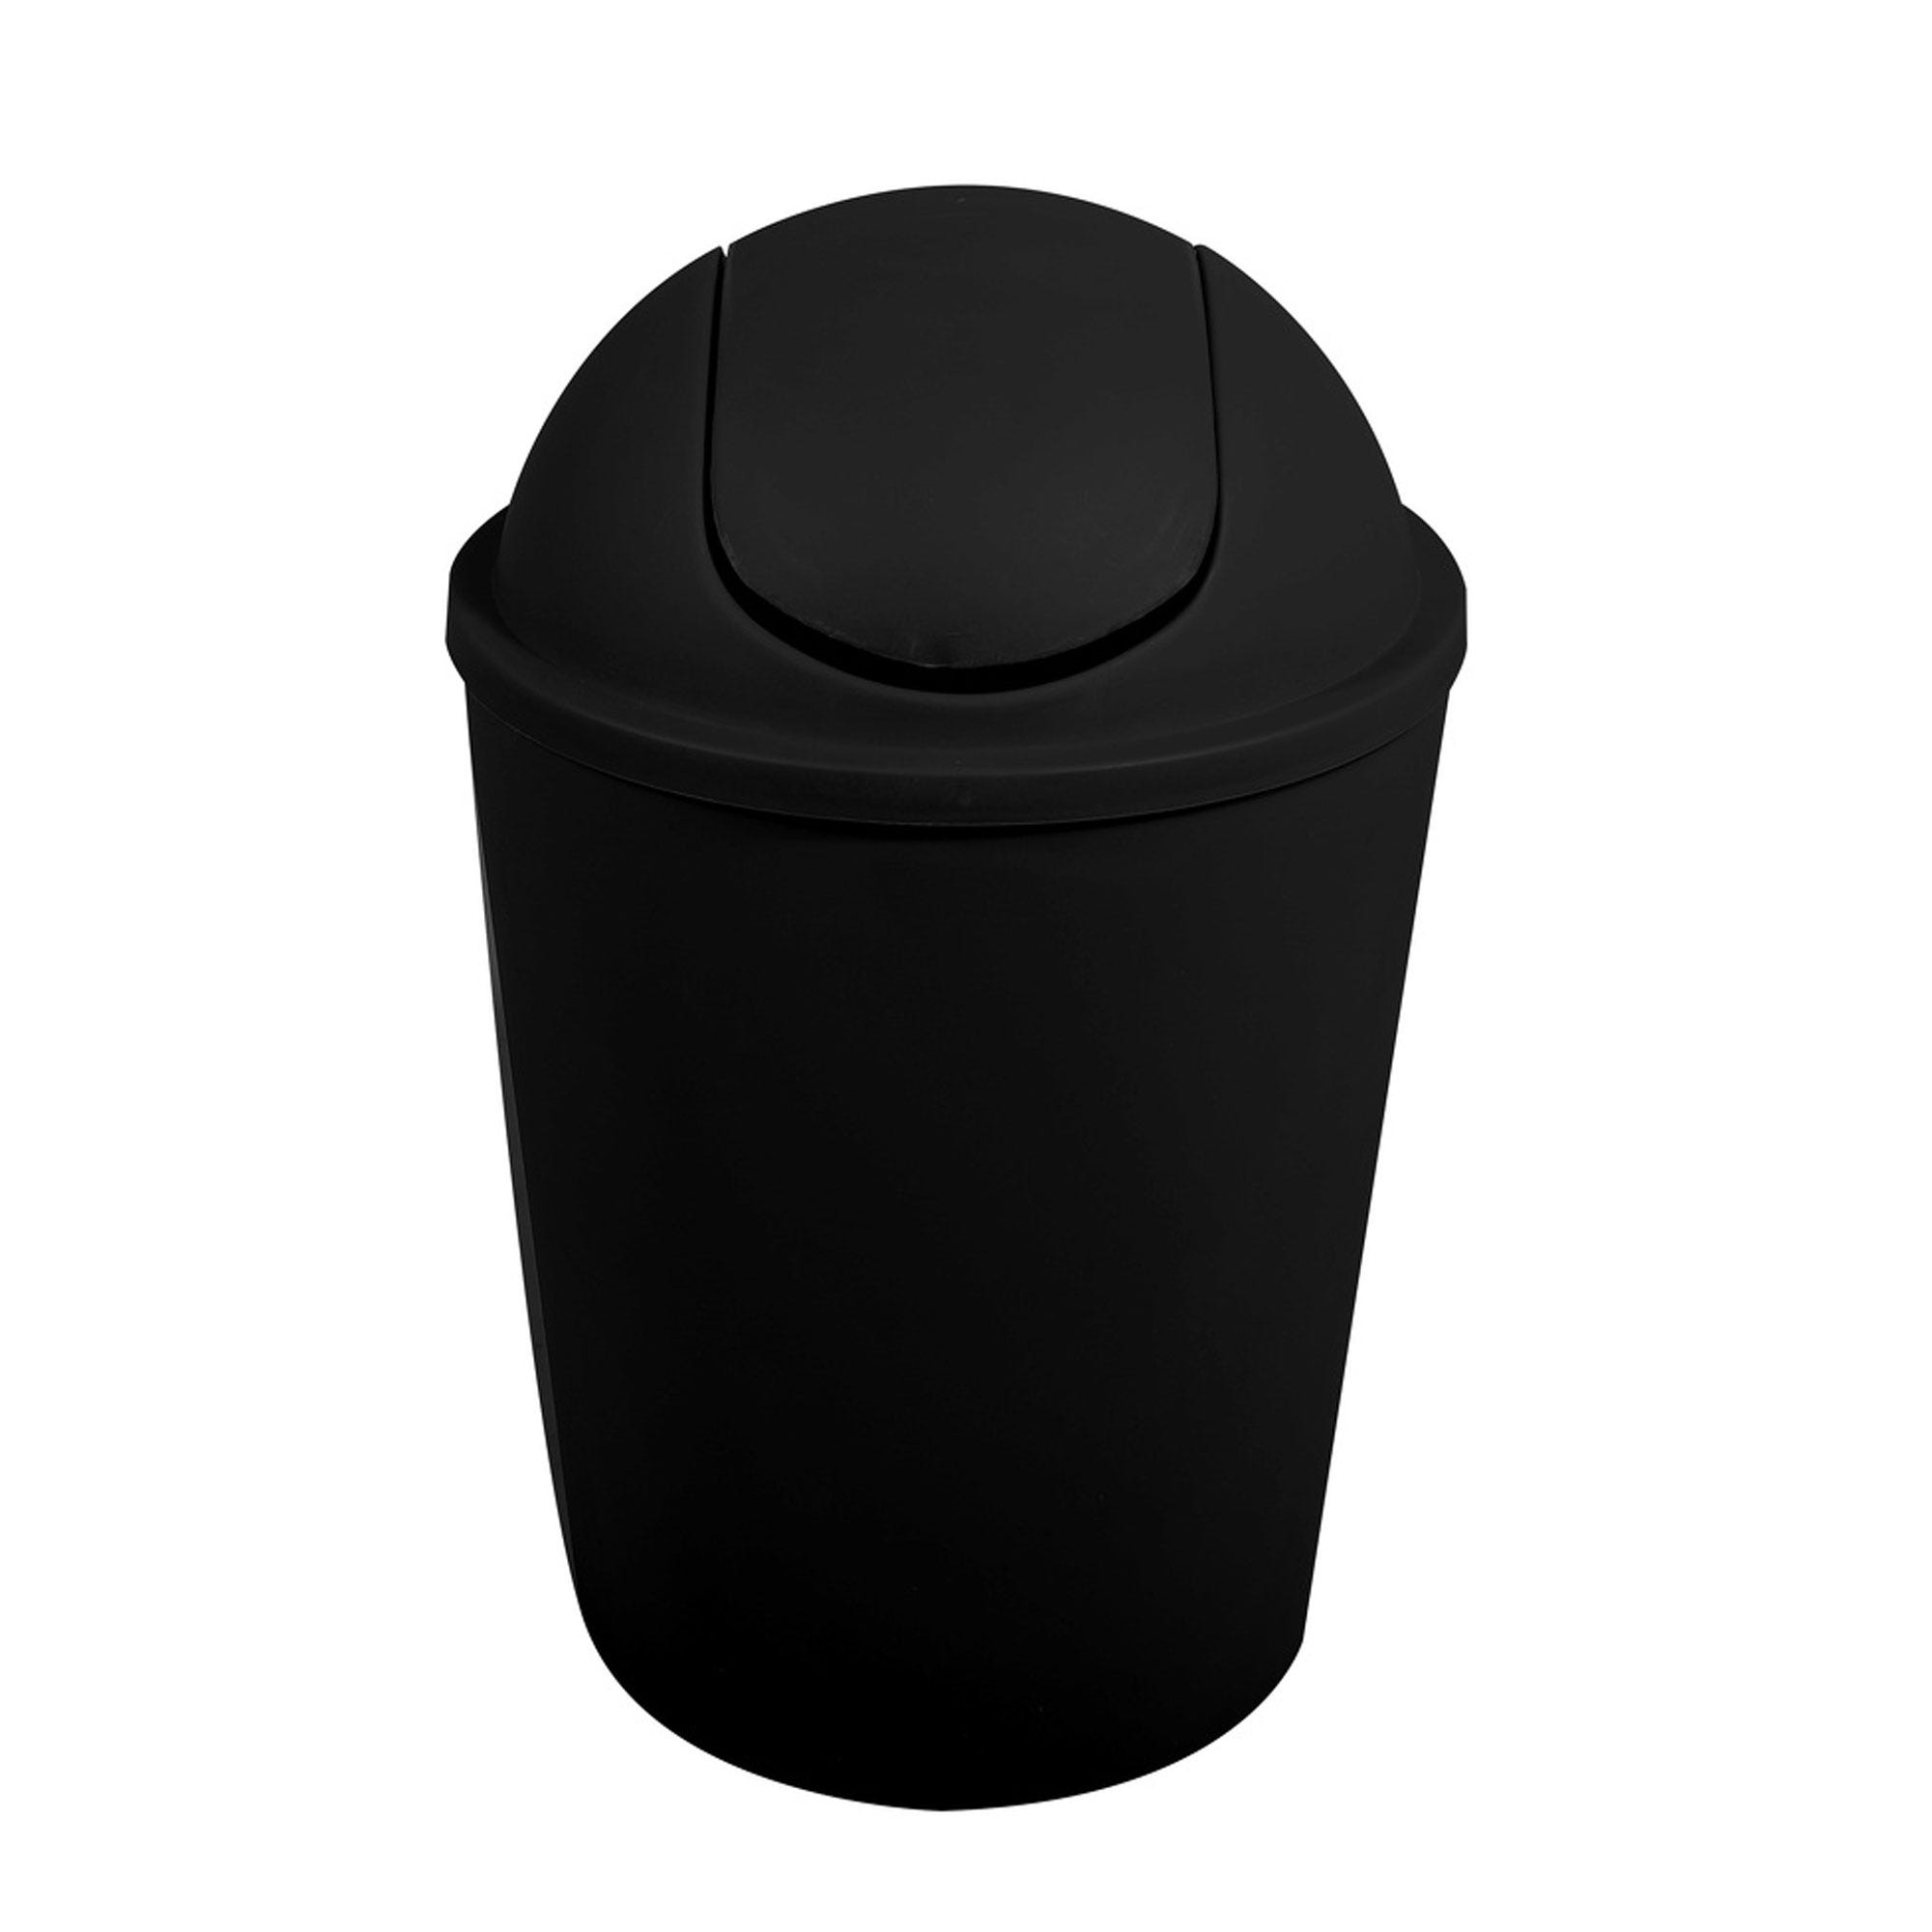 Cubo de basura 50 litros color negro sin tapa sp berner